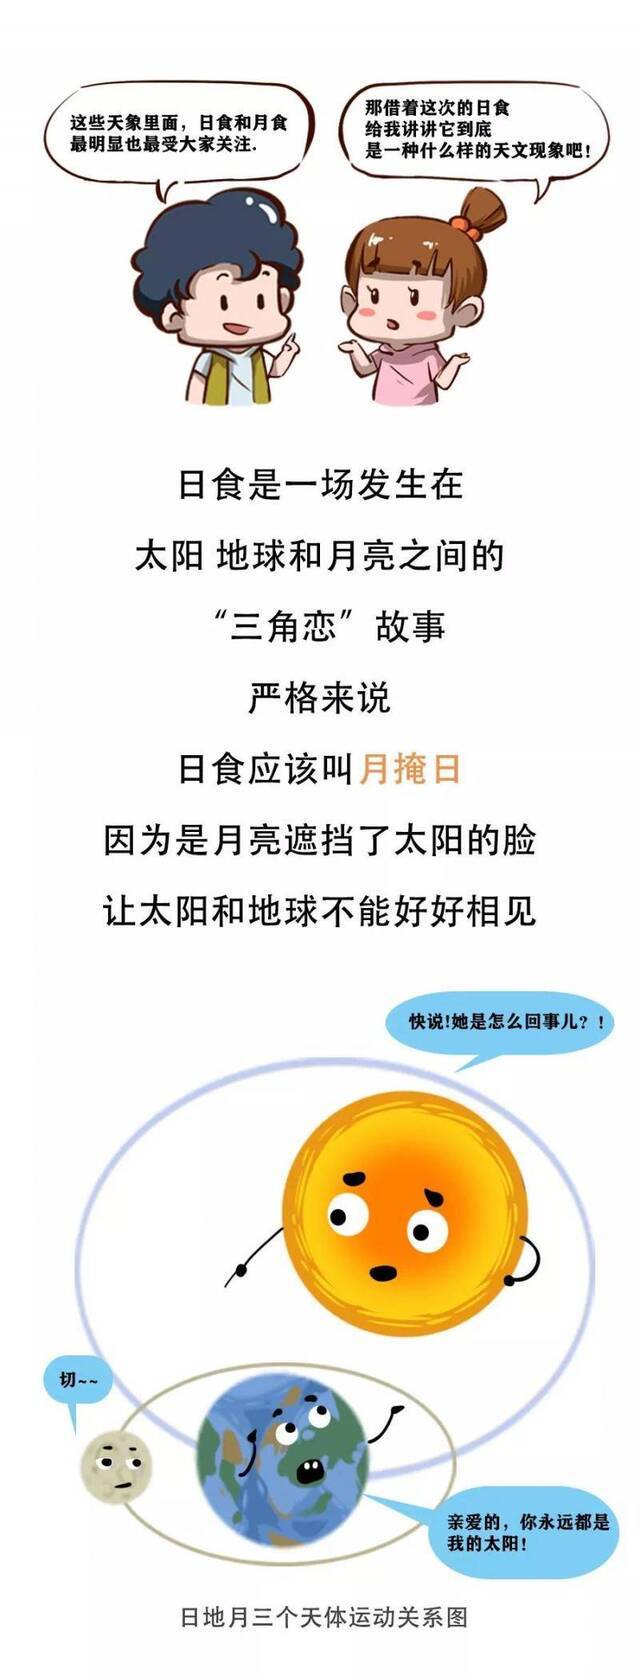 上海明天有日偏食 是否能观察到还要看云多不多